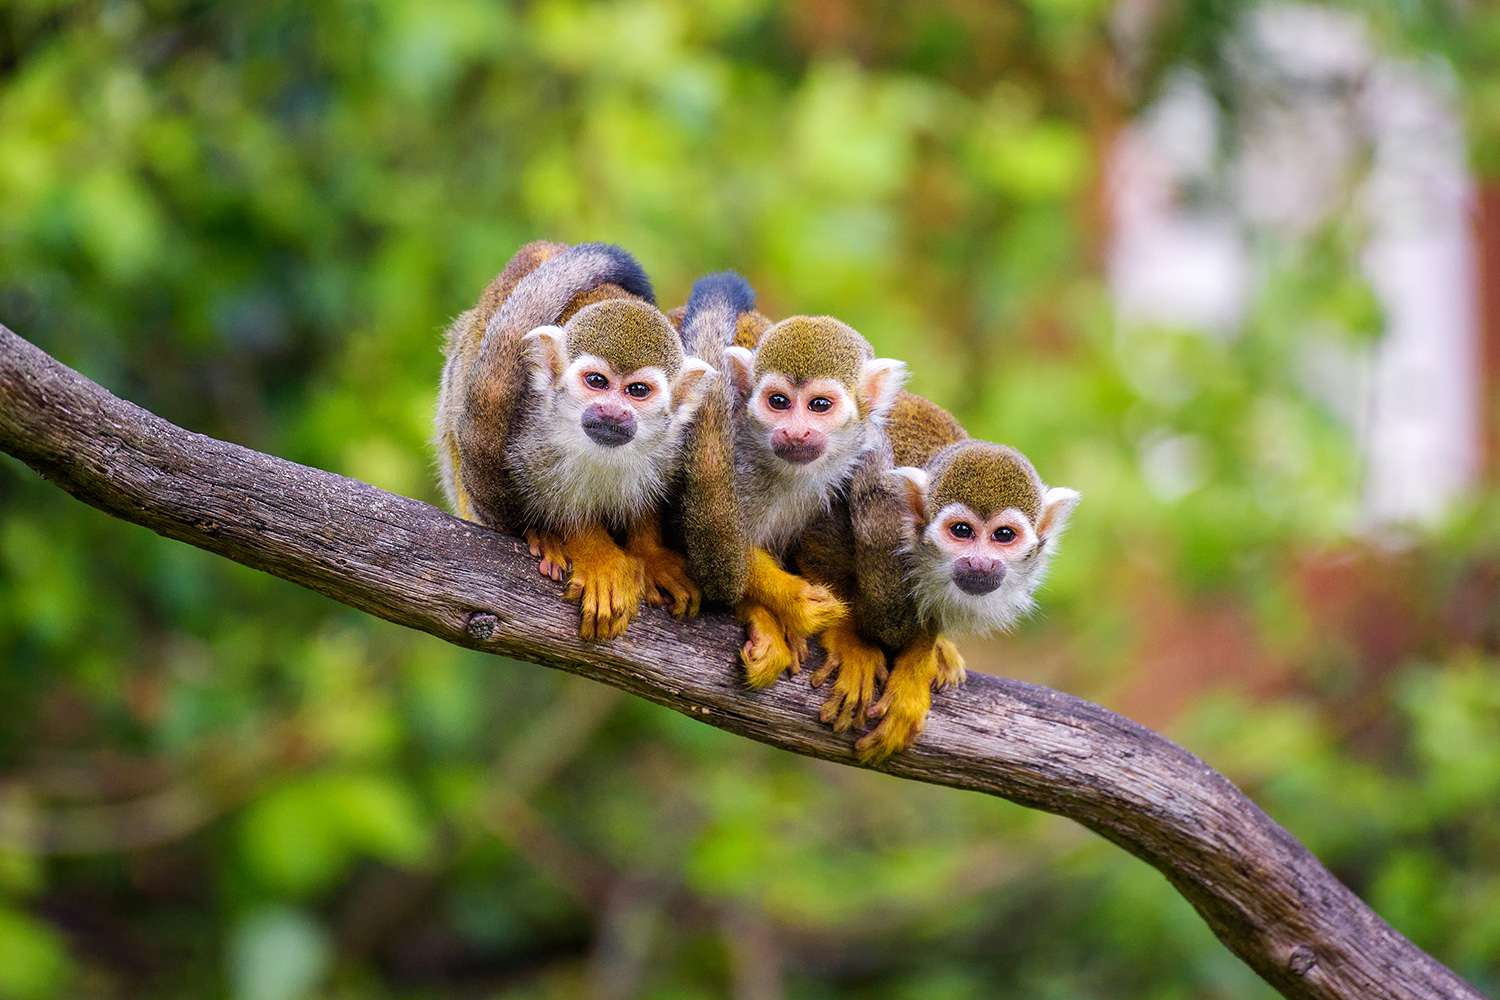 รายงานลิงกระรอก 12 ตัวหายไปจากสวนสัตว์หลุยเซียน่า หลังถูกขโมย 'เป้าหมาย'